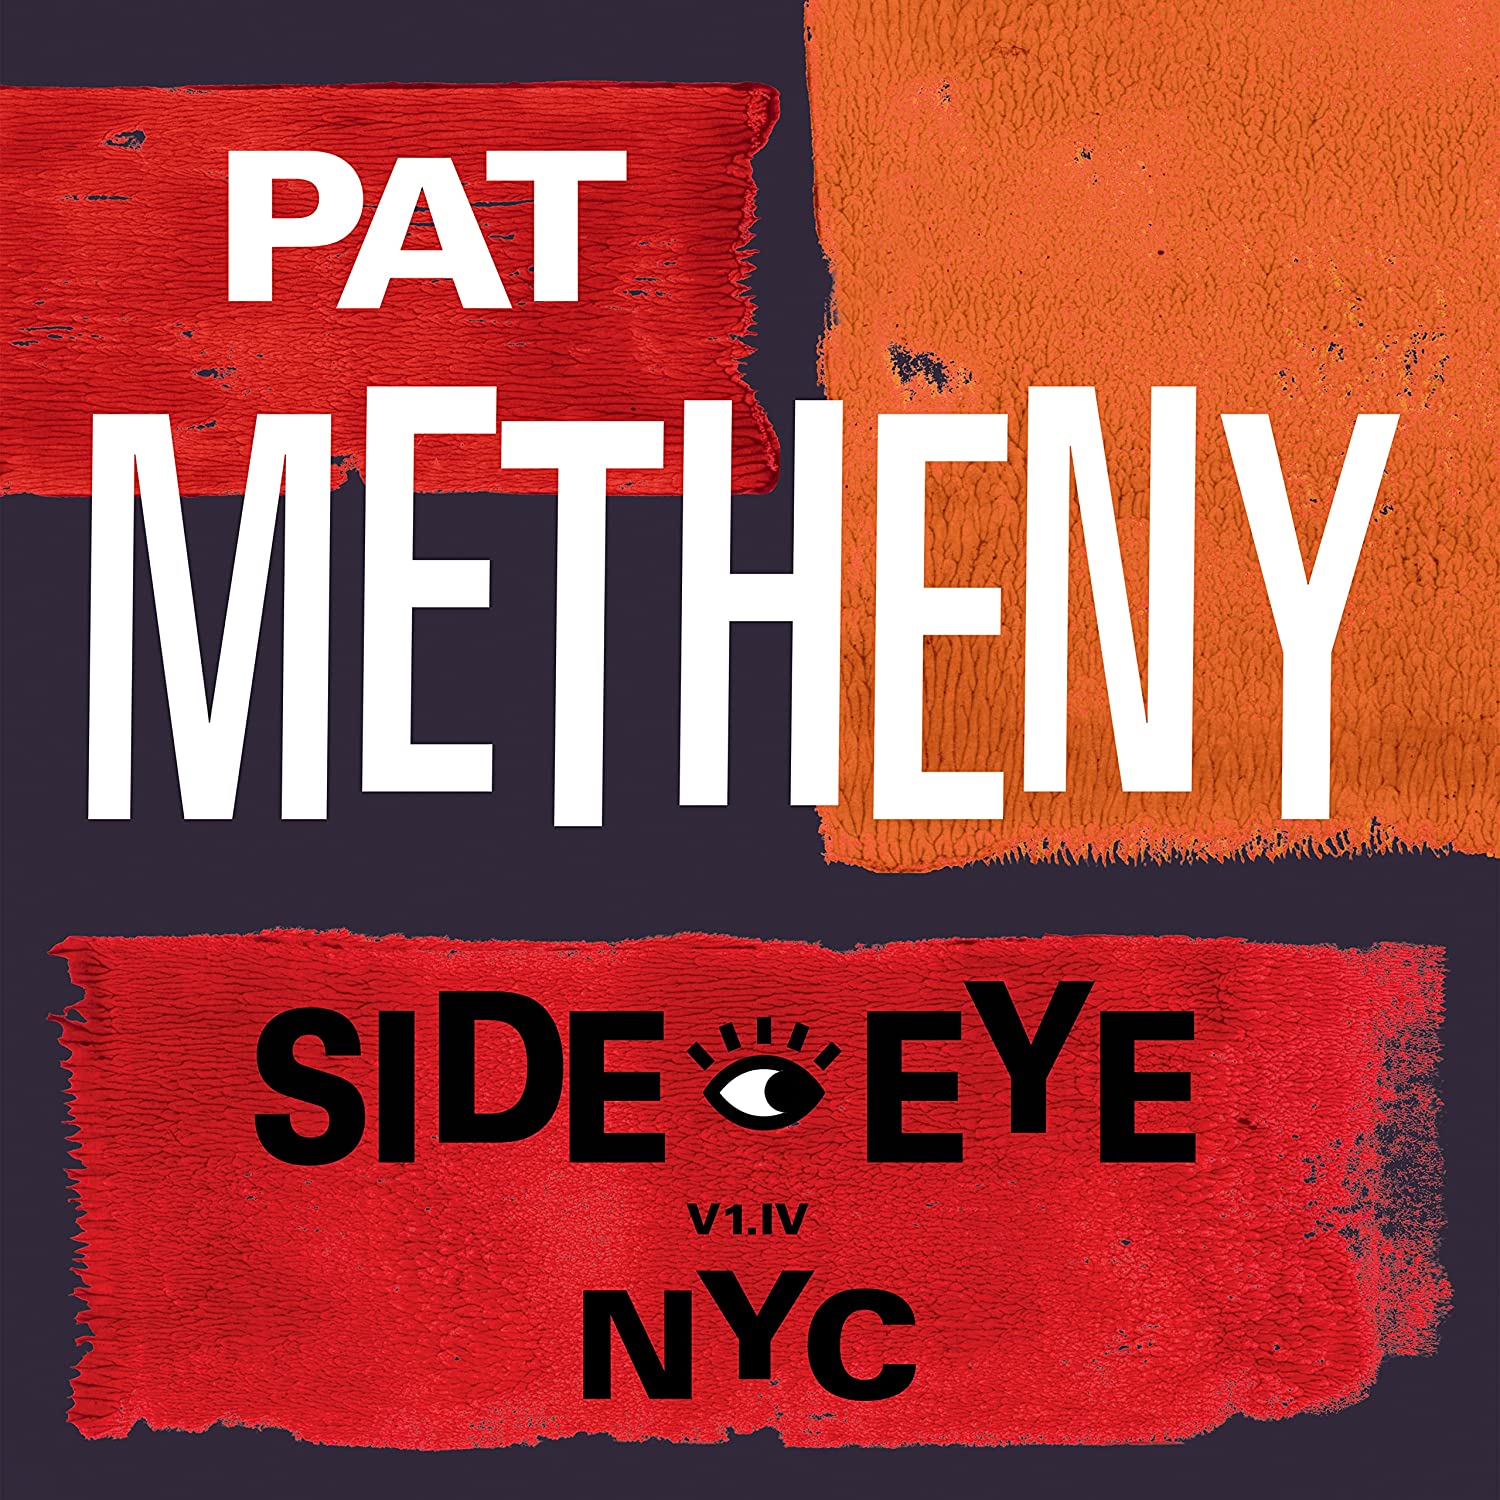 Pat Metheny: Side-Eye NYC (V1.IV)